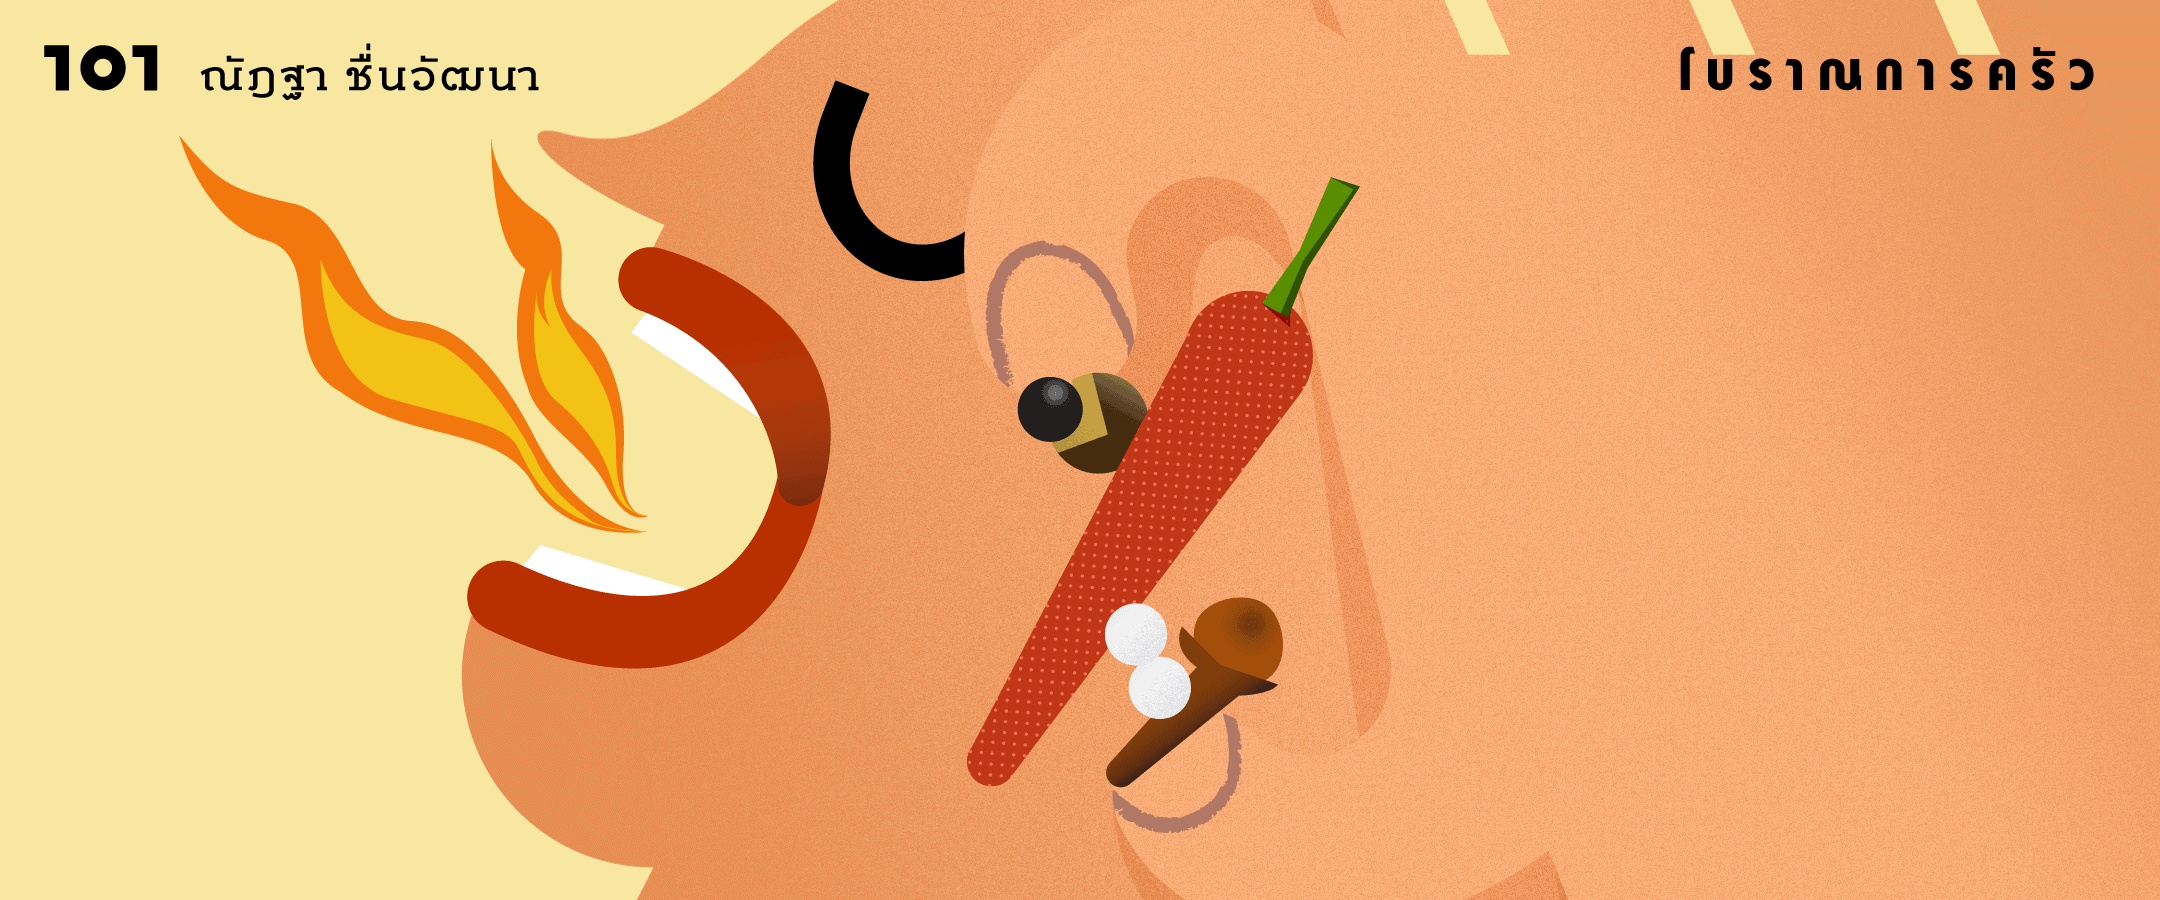 รสเผ็ดร้อนก่อนพริกเทศ: รอยรสชาติ โบราณพฤกษคดี และลาบเนื้อ